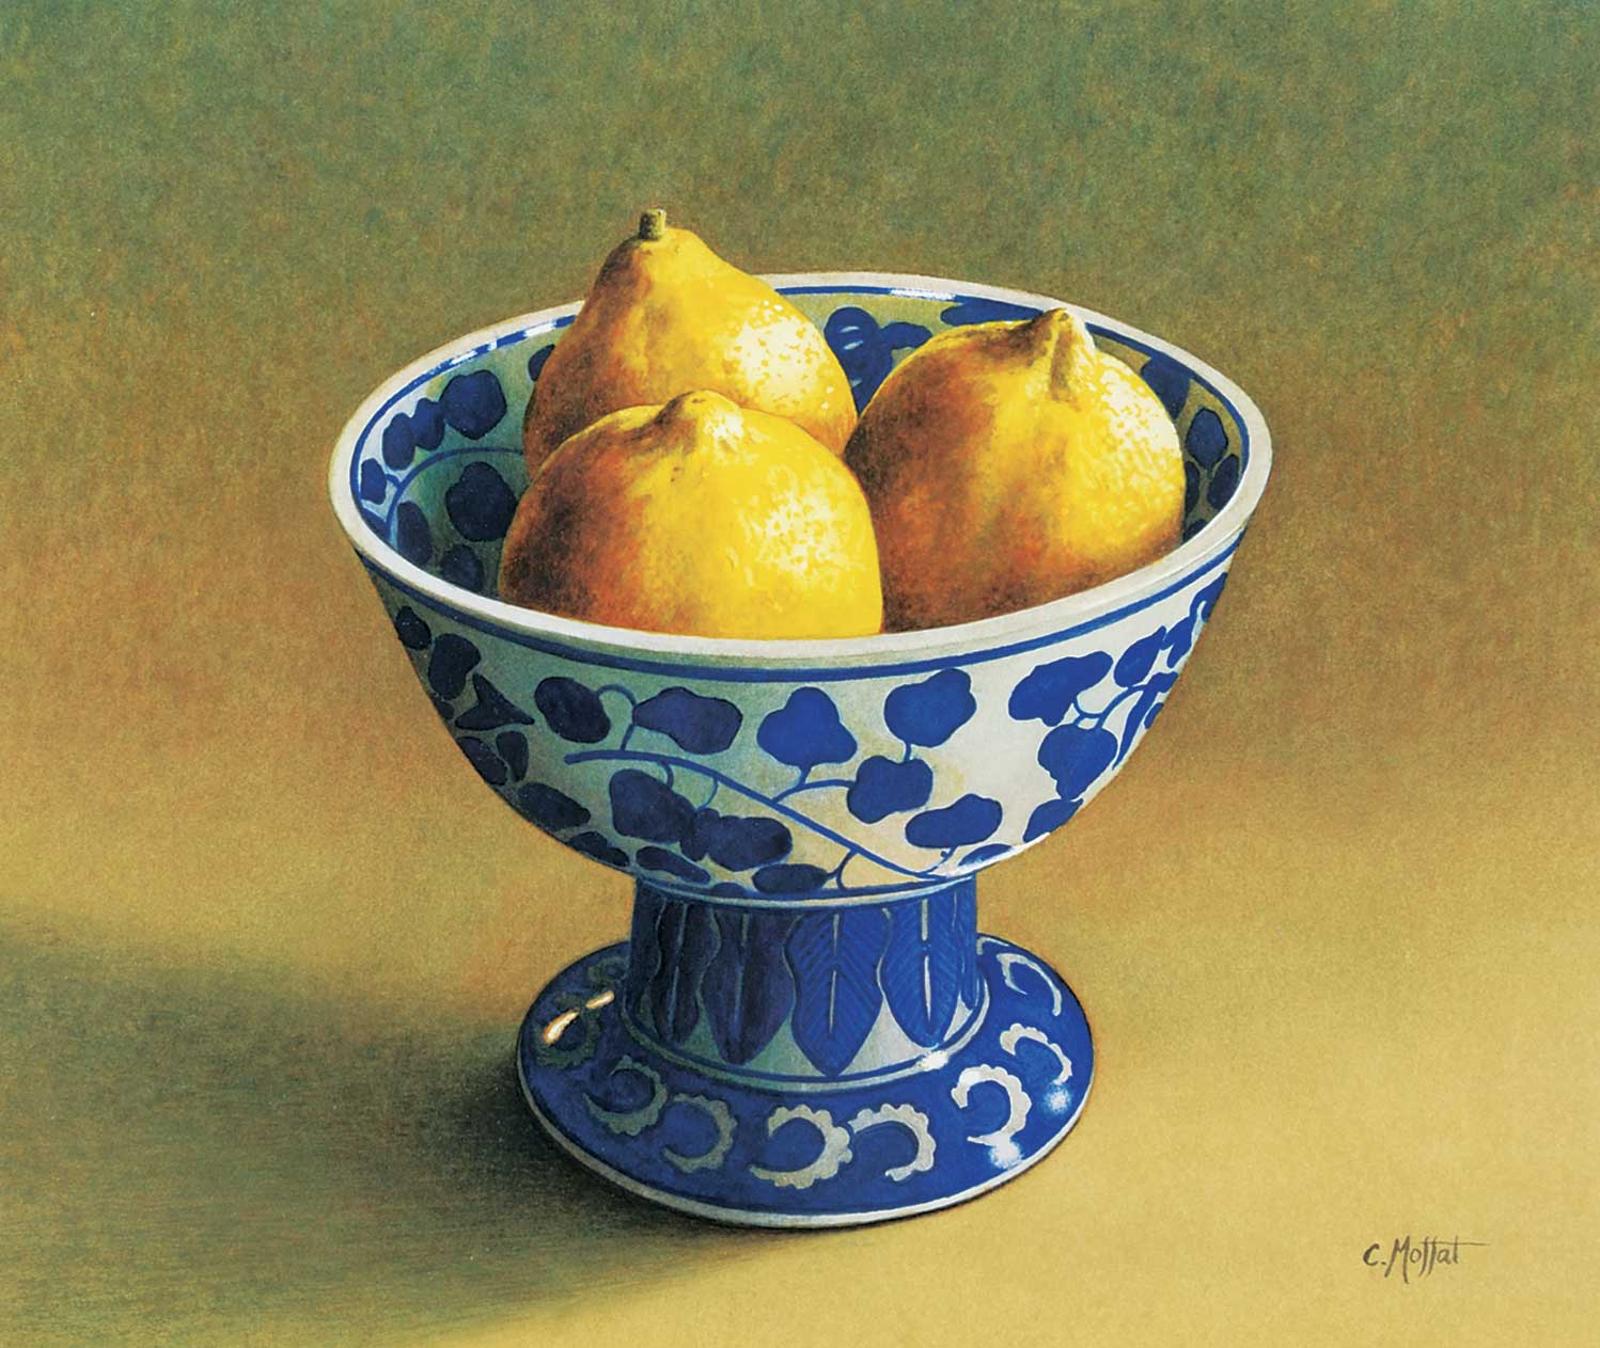 Catherine Moffat - Bowling Lemons